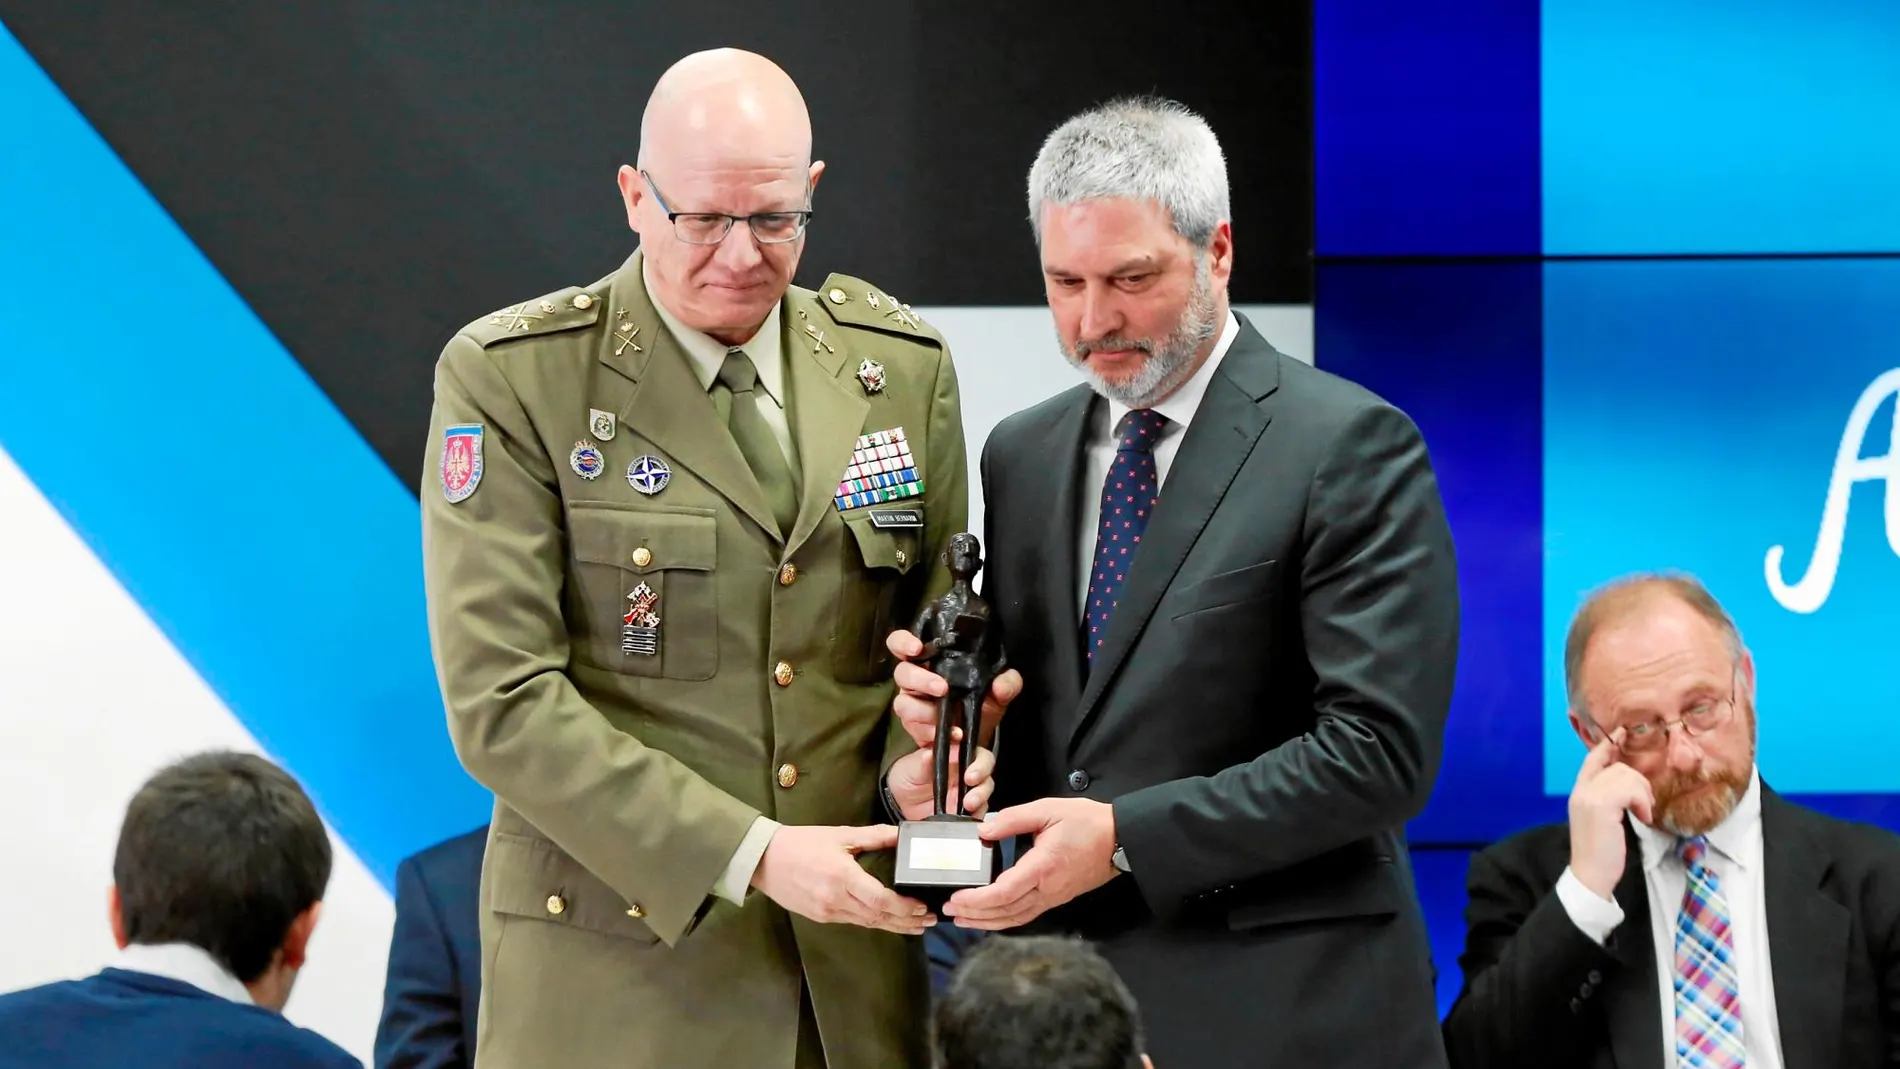 El presidente de Sociedad Civil Catalana, Josep Ramón Bosch, recibe el premio de manos del segundo JEME, teniente general Miguel Martín Bernardi / LA RAZÓN